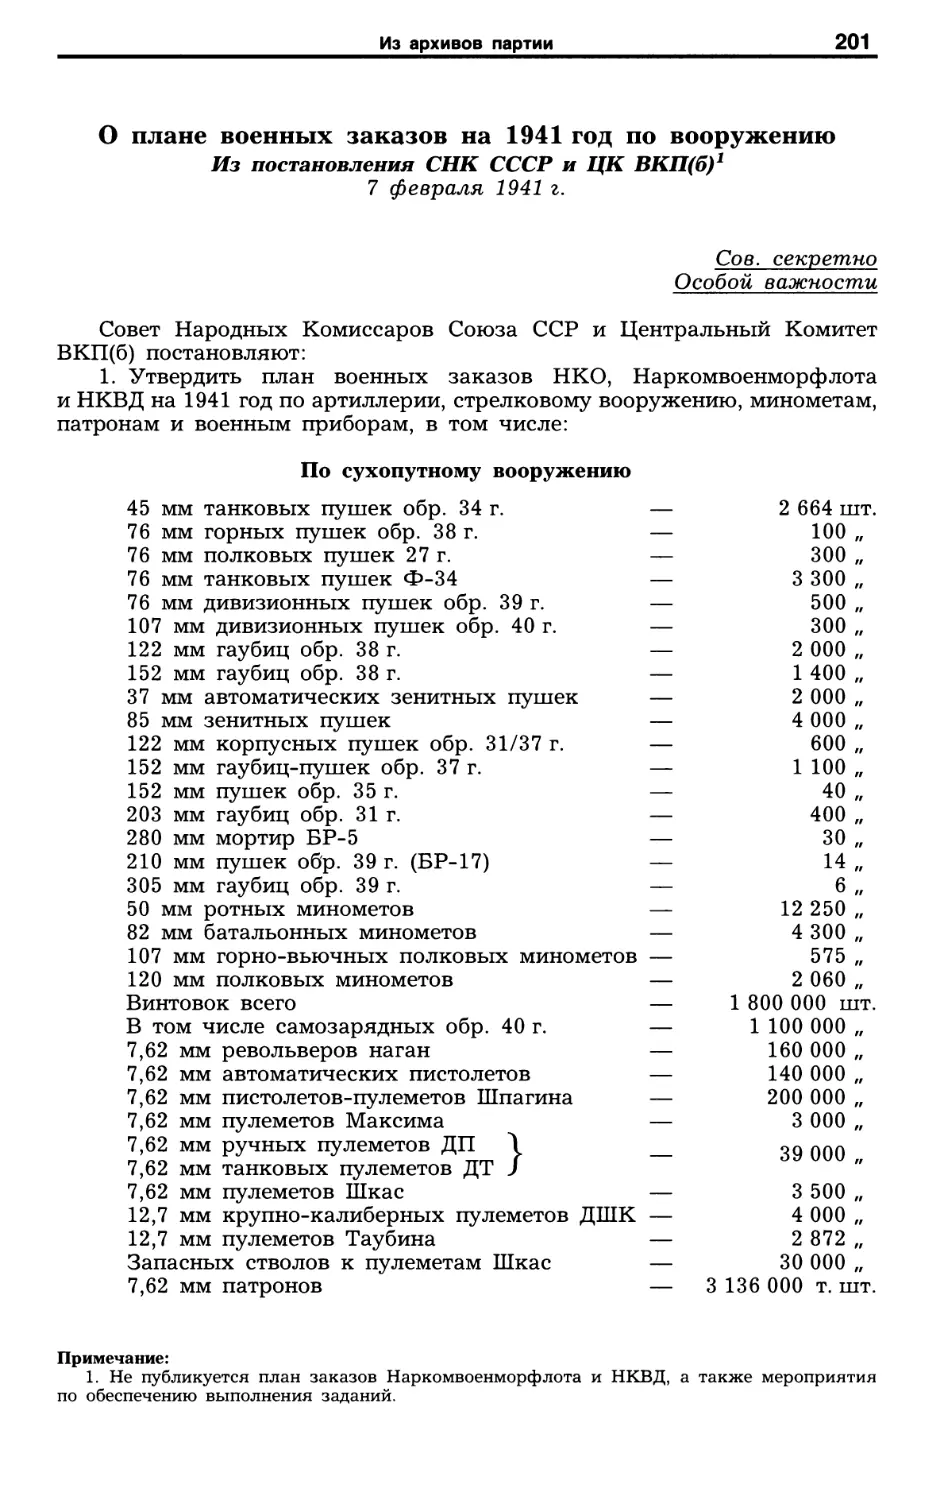 О плане военных заказов на 1941 год по вооружению. 7 февраля 1941 г